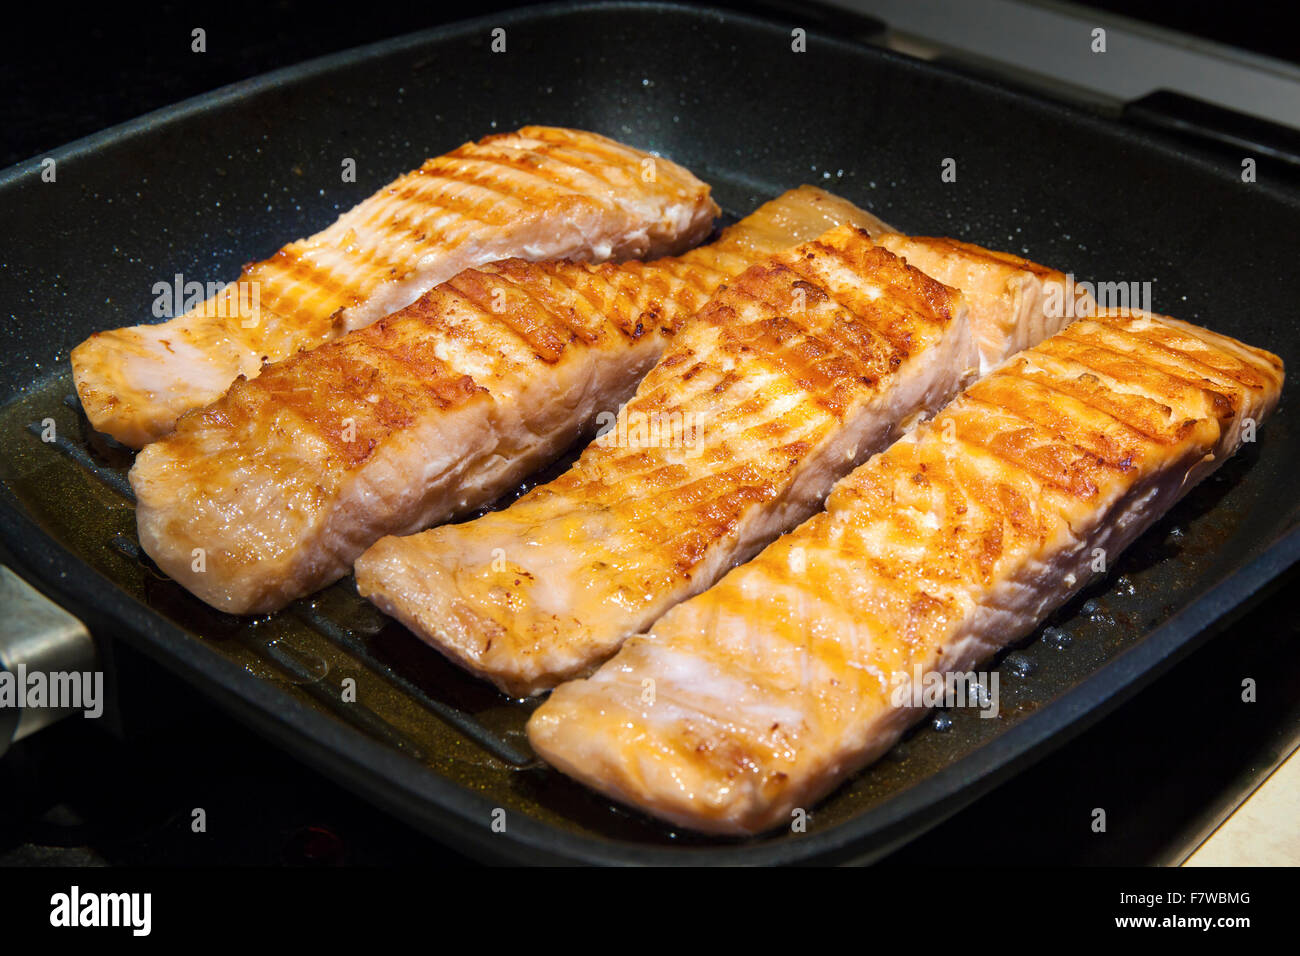 La cottura di pezzi di un pesce Salmone in padella calda sul fornello da cucina. La carne viene con una dorata crosta di frittura Foto Stock